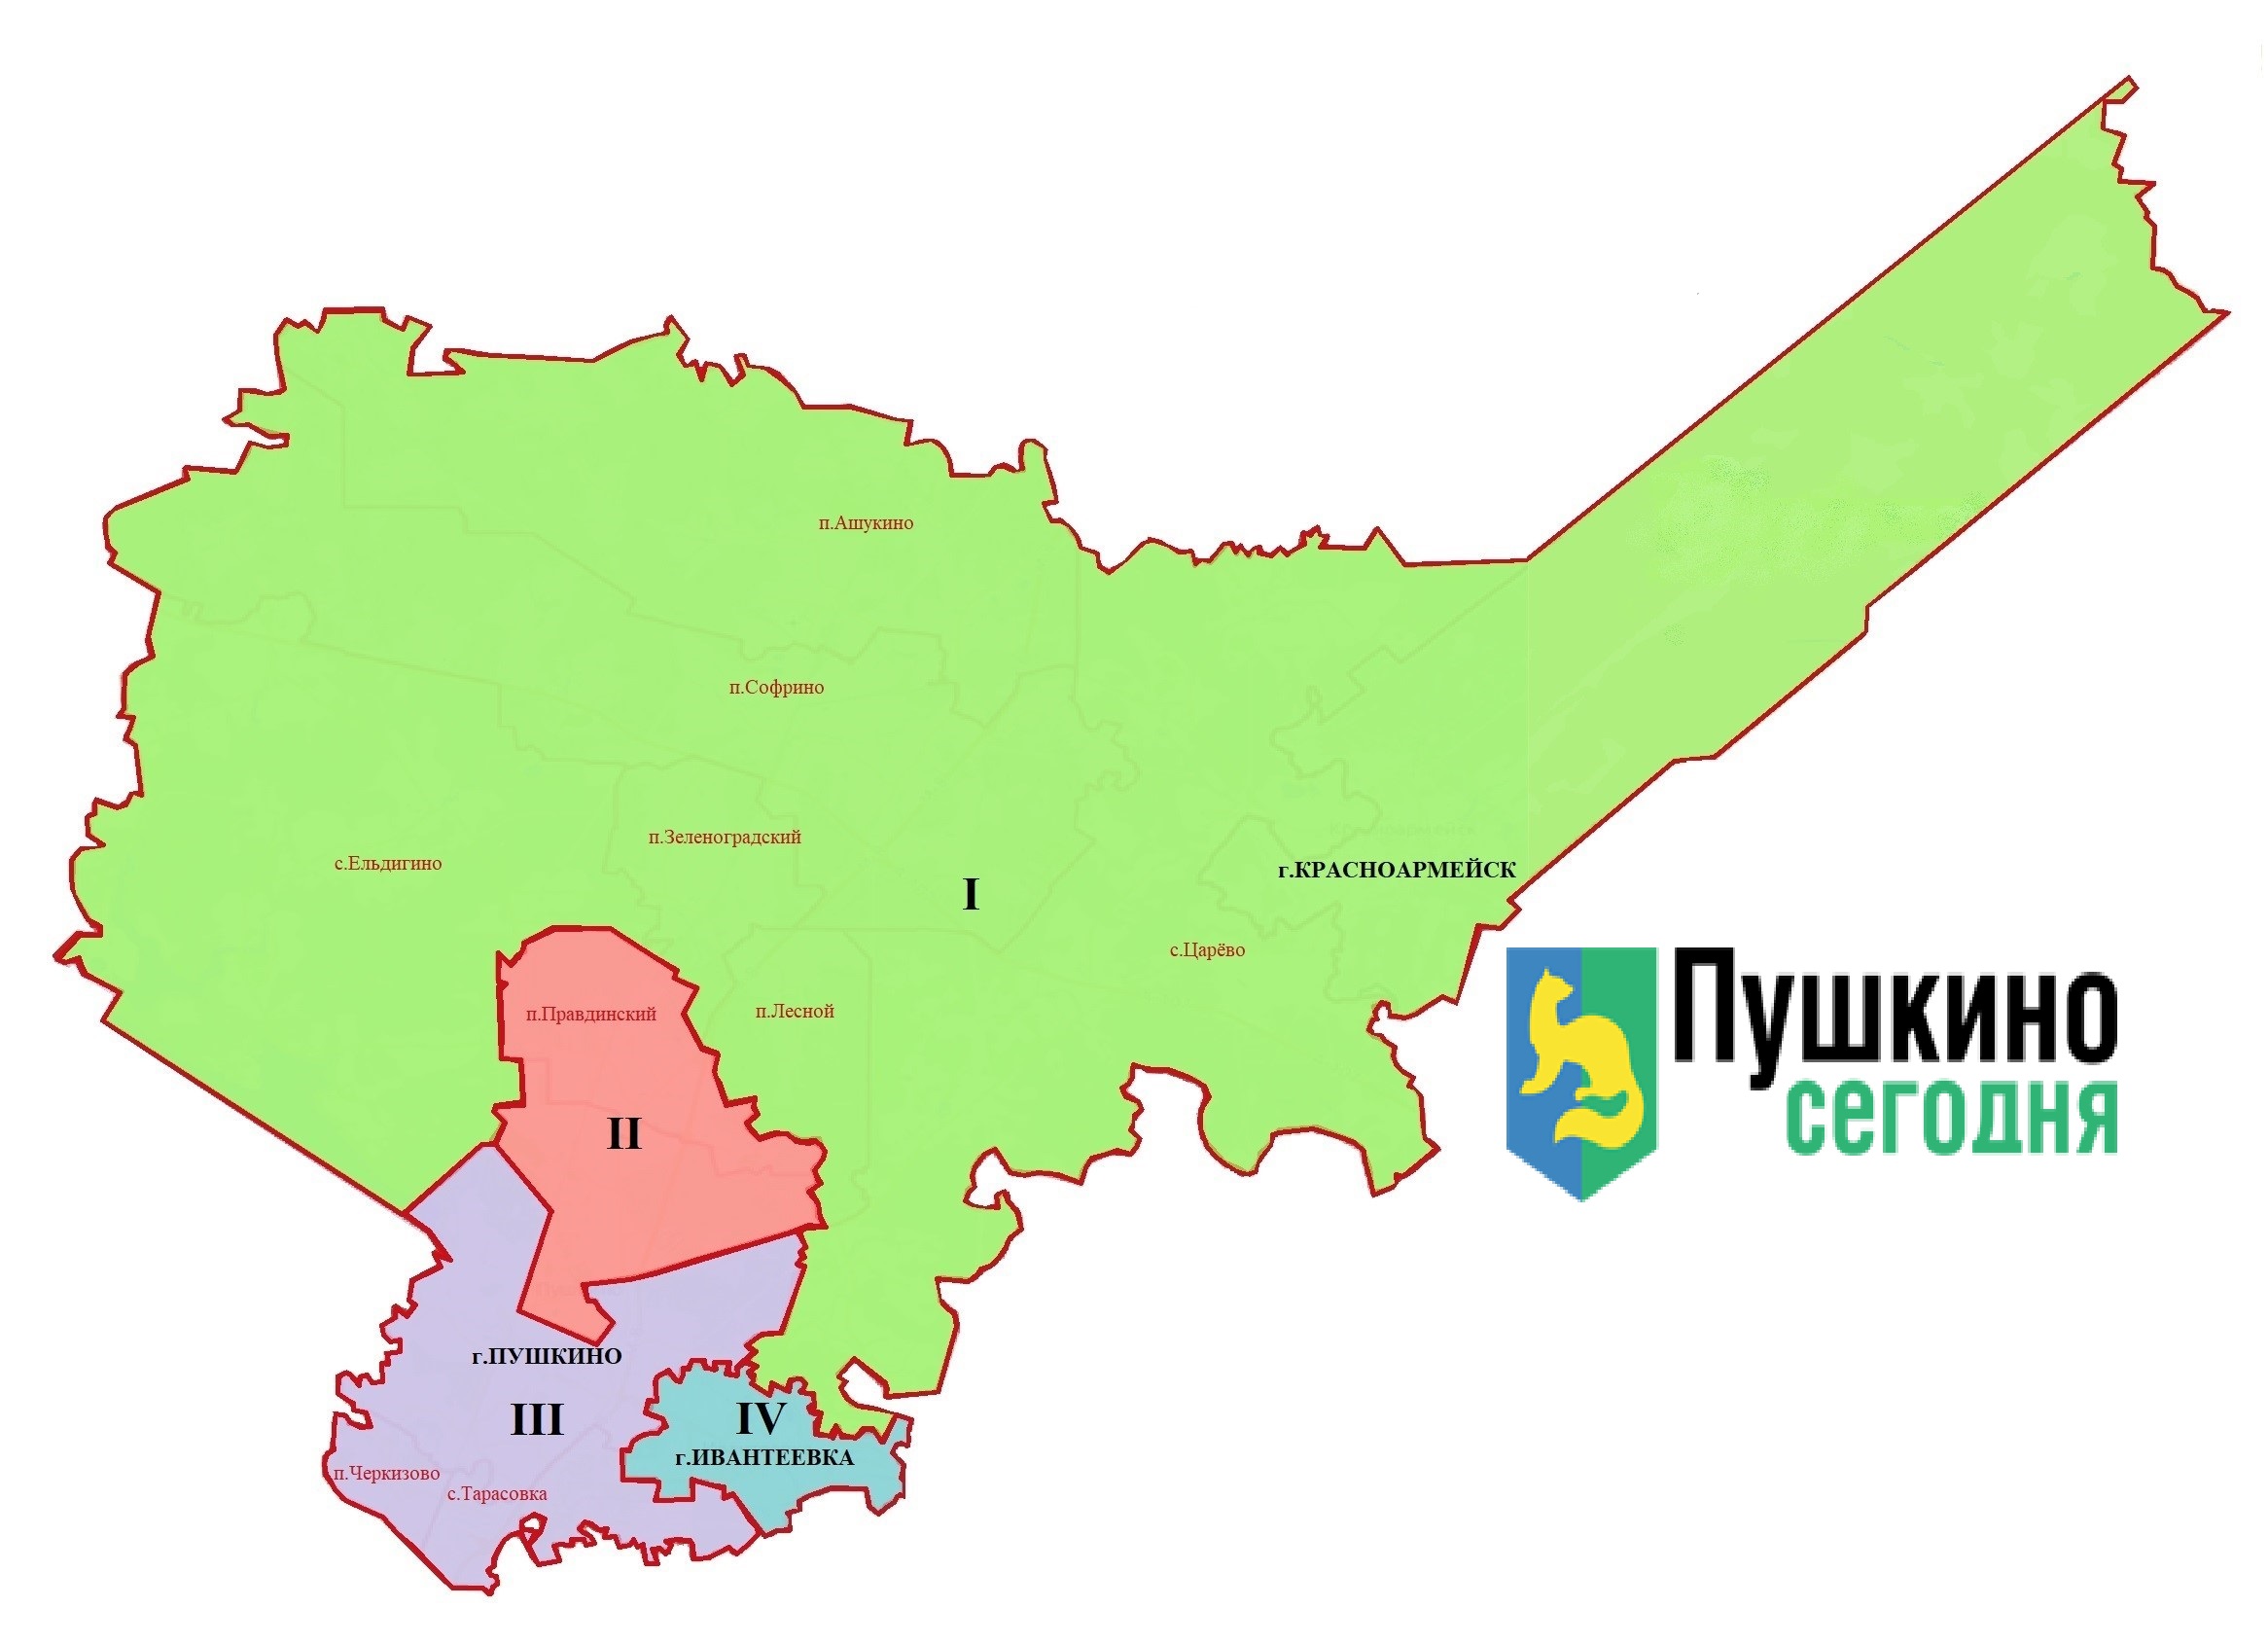 Избирательные округа московской области